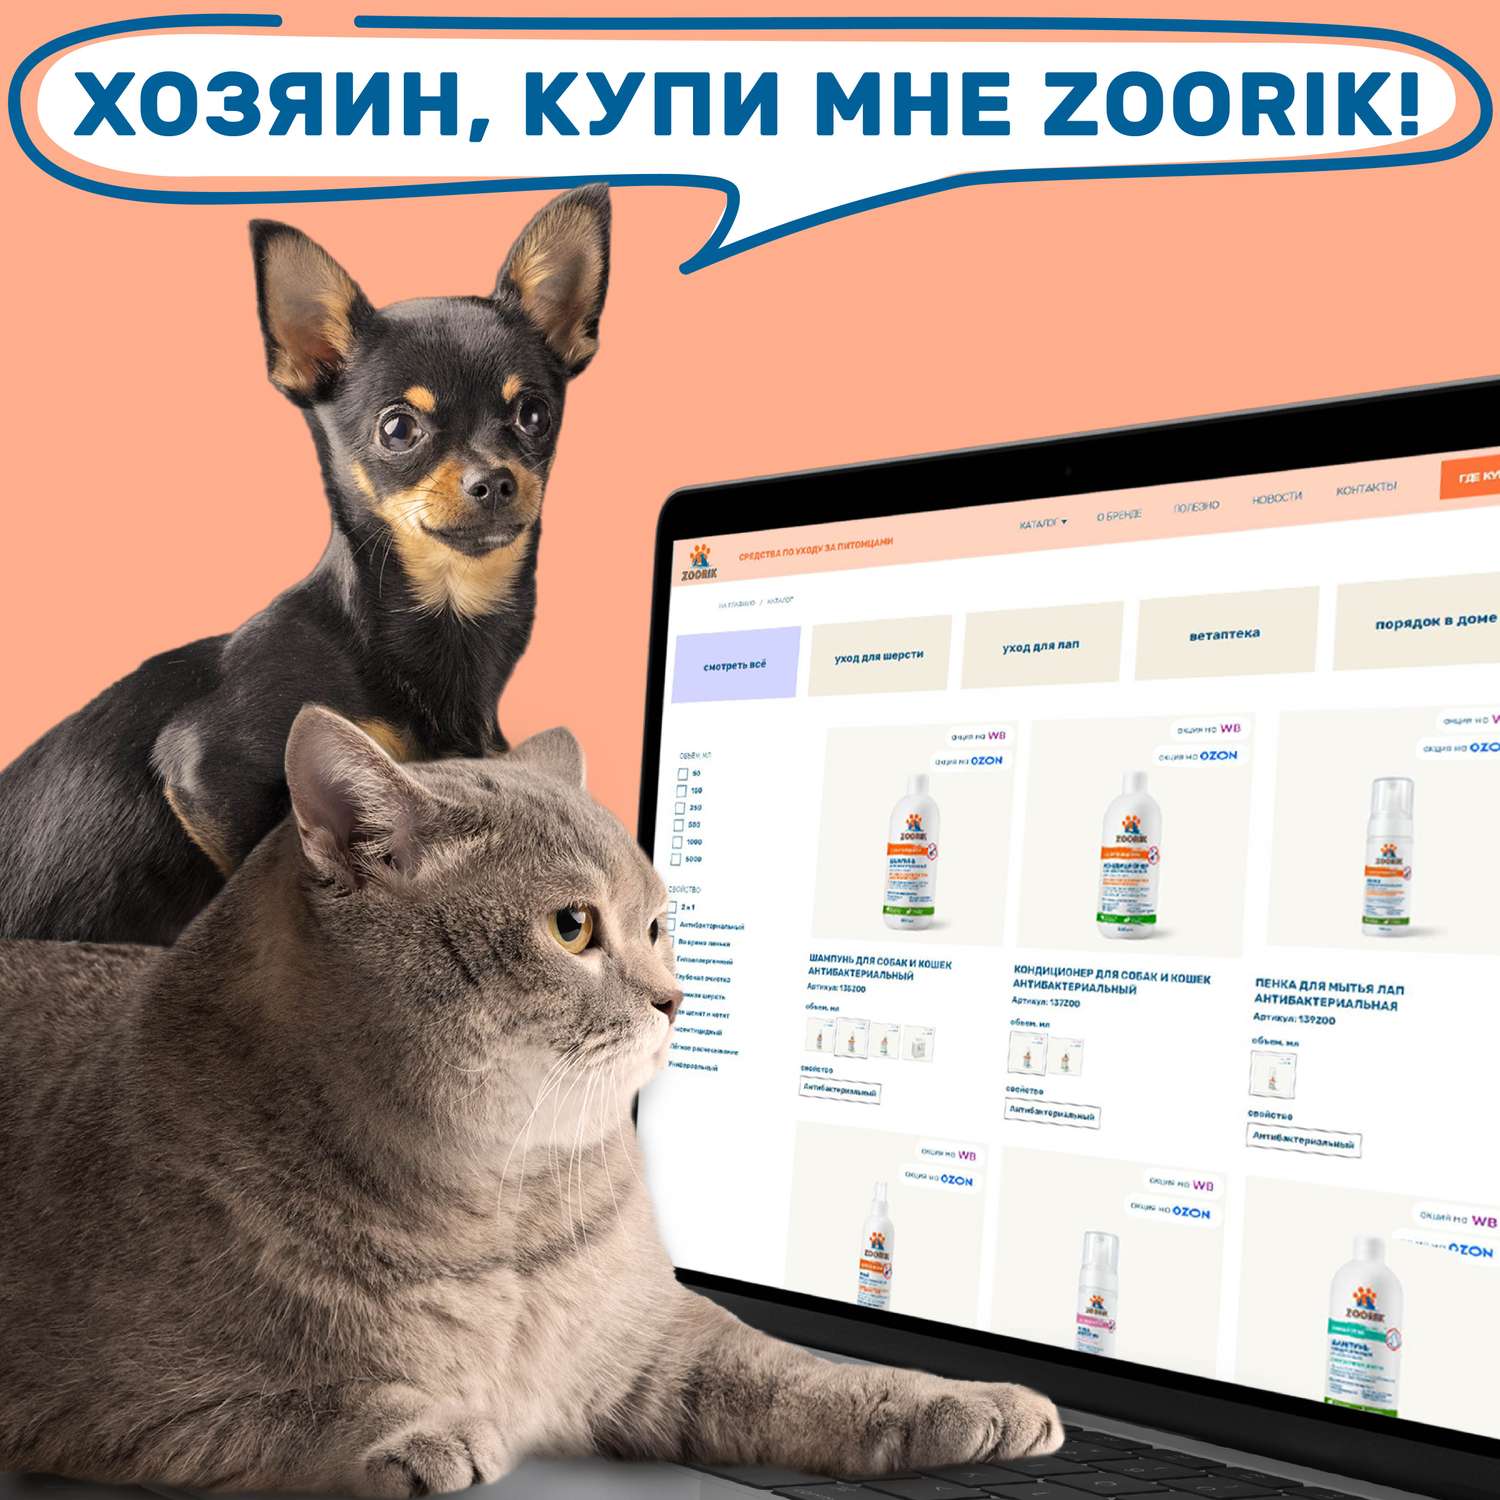 Кондиционер для собак и кошек ZOORIK антибактериальный 1000 мл - фото 13